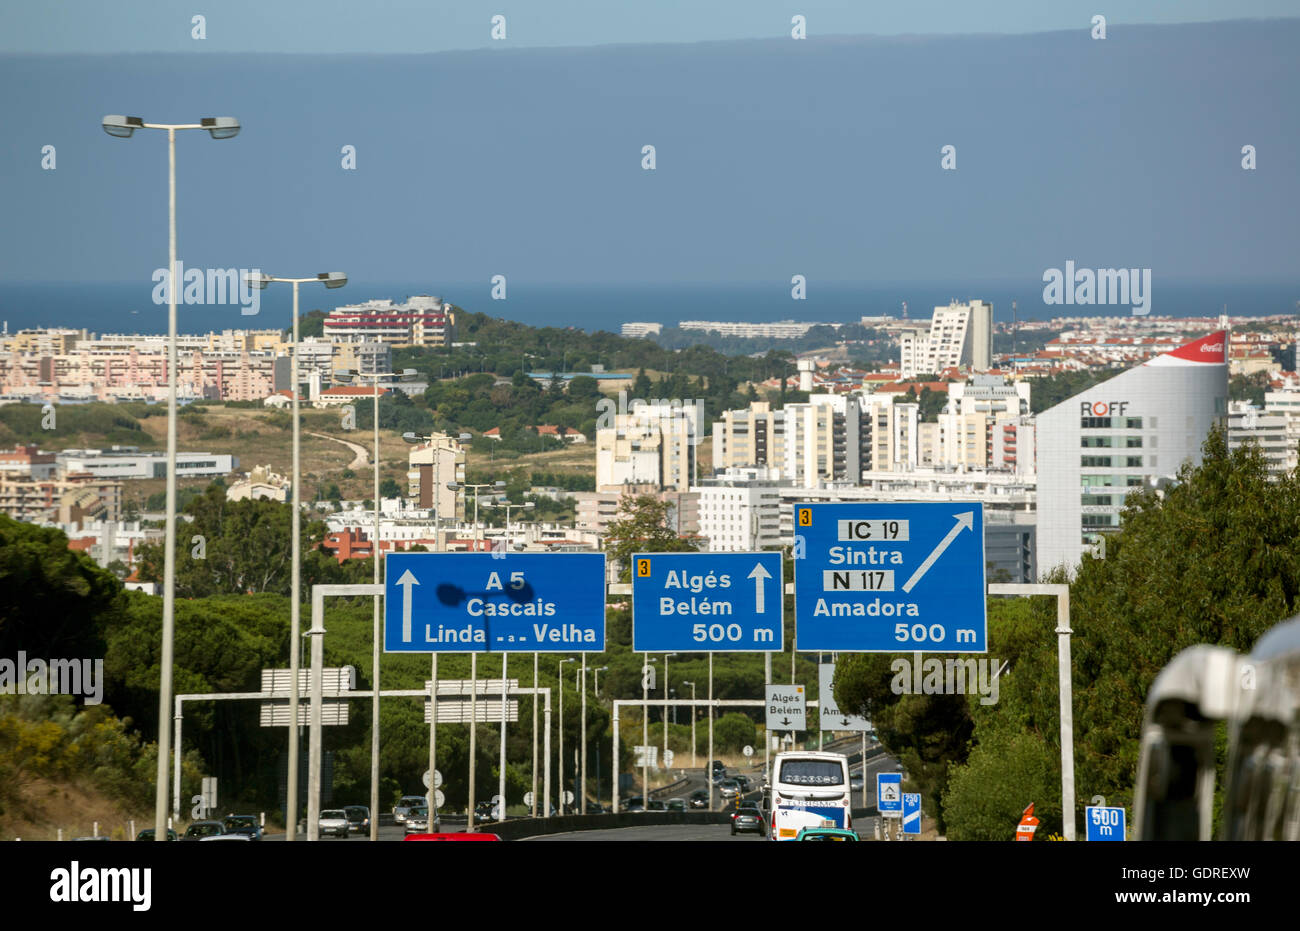 Straßenschild in Bezug auf Belem und Sintra, Lissabon, Stadtteil von Lissabon, Portugal, Europa Sintra, Lissabon, Lissabon, Portugal, Europa Stockfoto